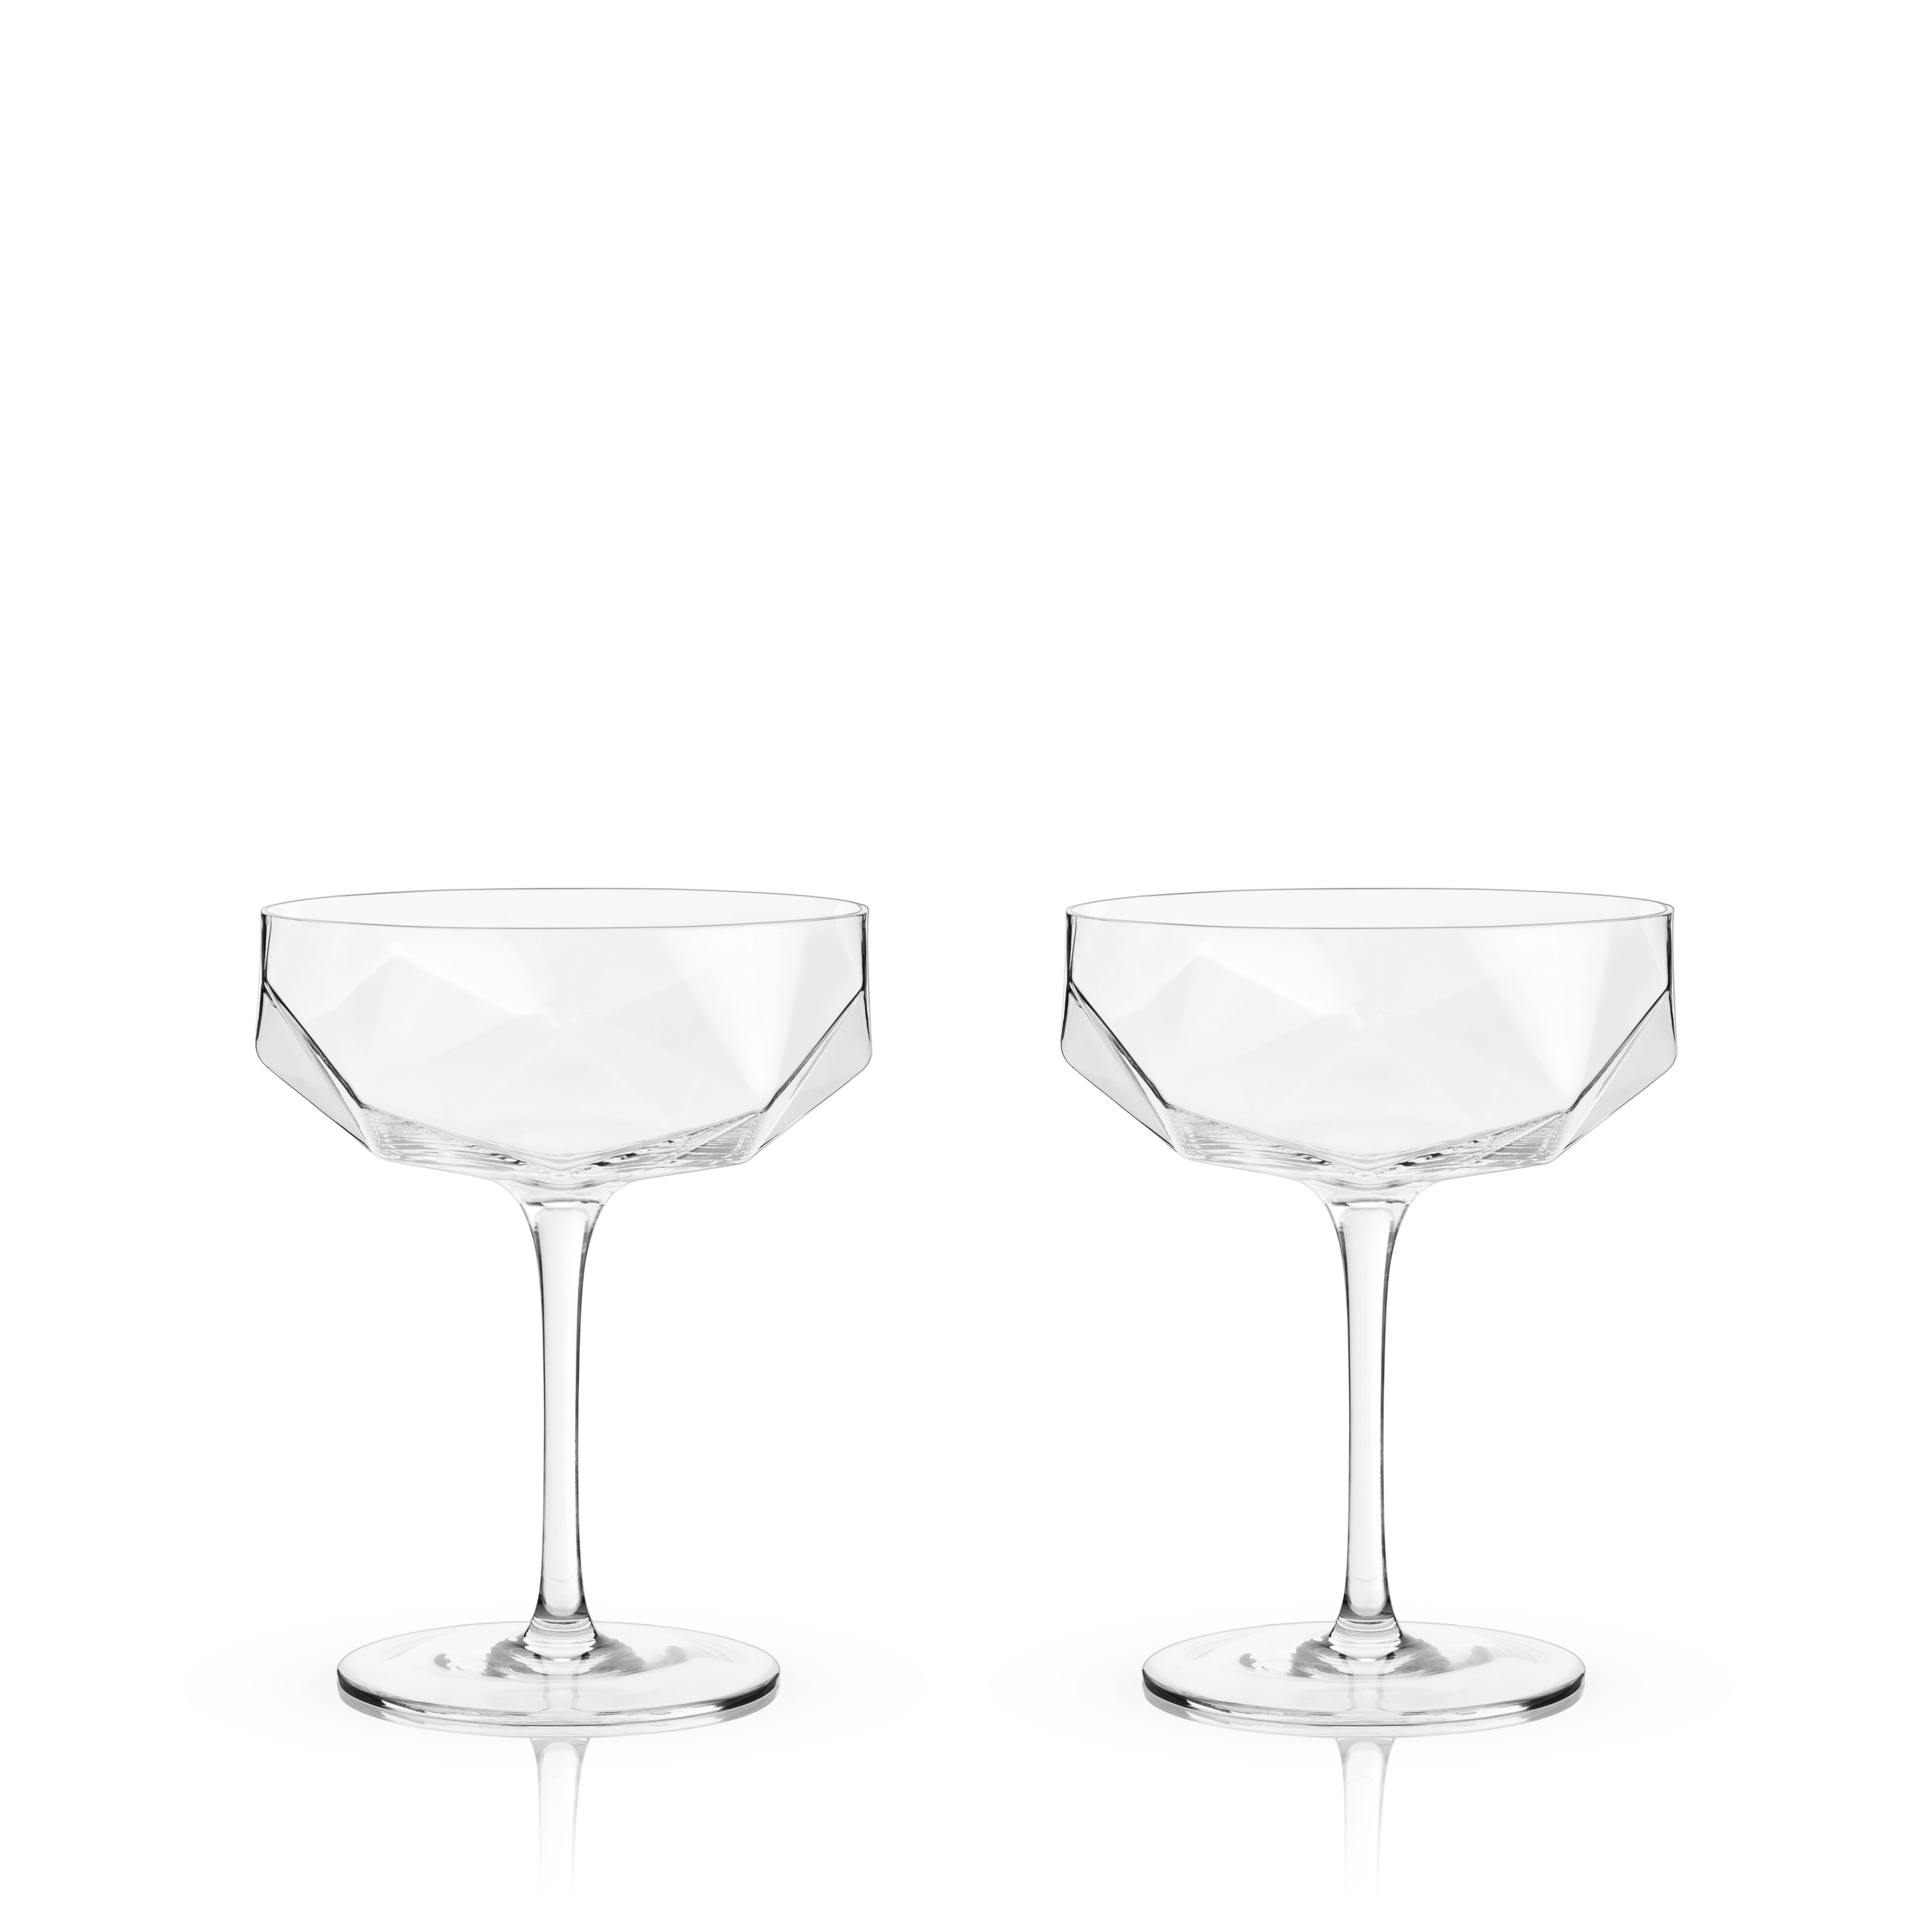 Viski Angled Crystal Coupe Glasses (Set of 4)